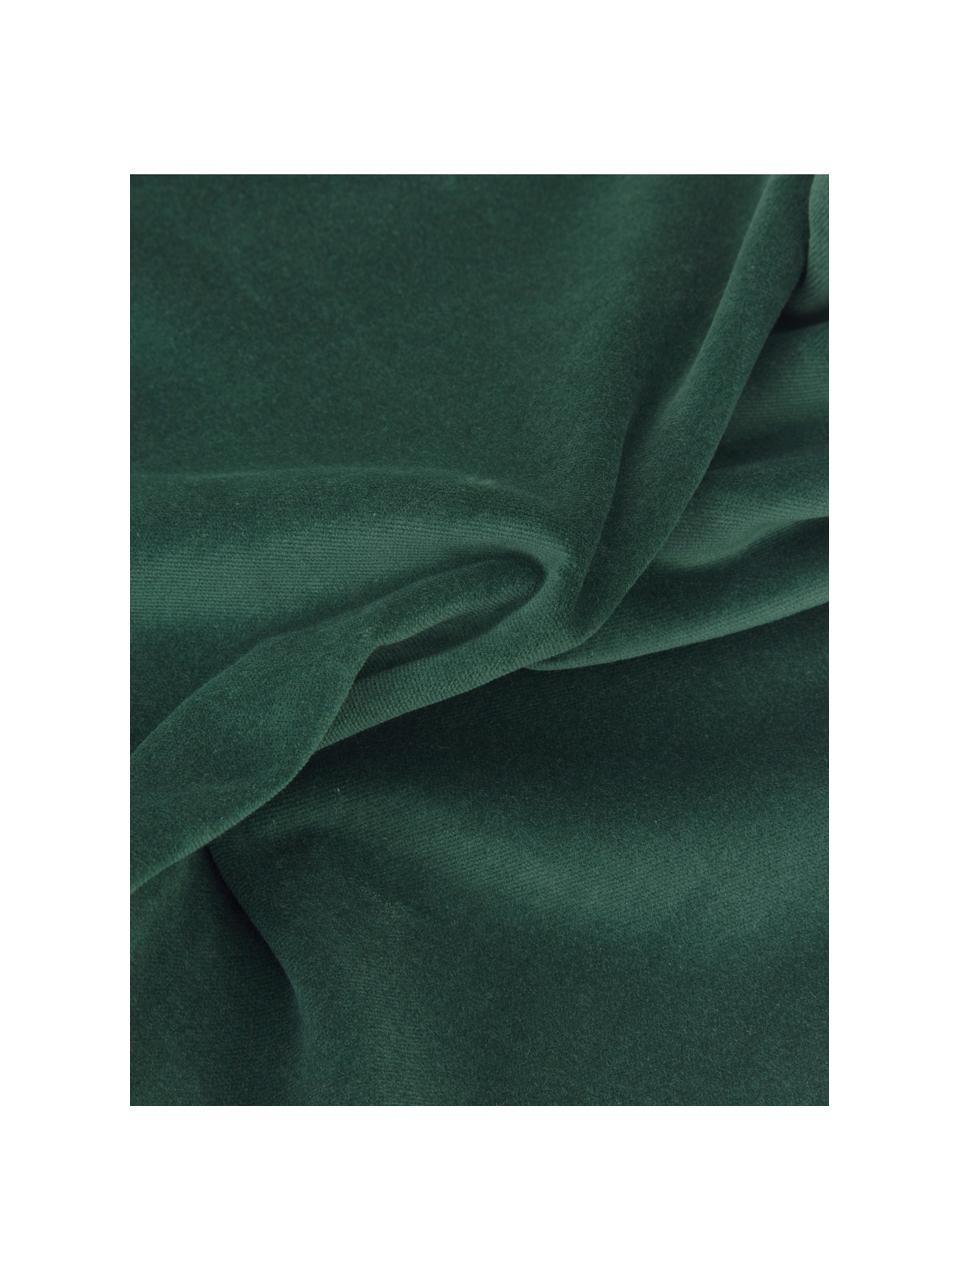 Funda de cojín de terciopelo Dana, 100% terciopelo de algodón, Verde oscuro, An 30 x L 50 cm